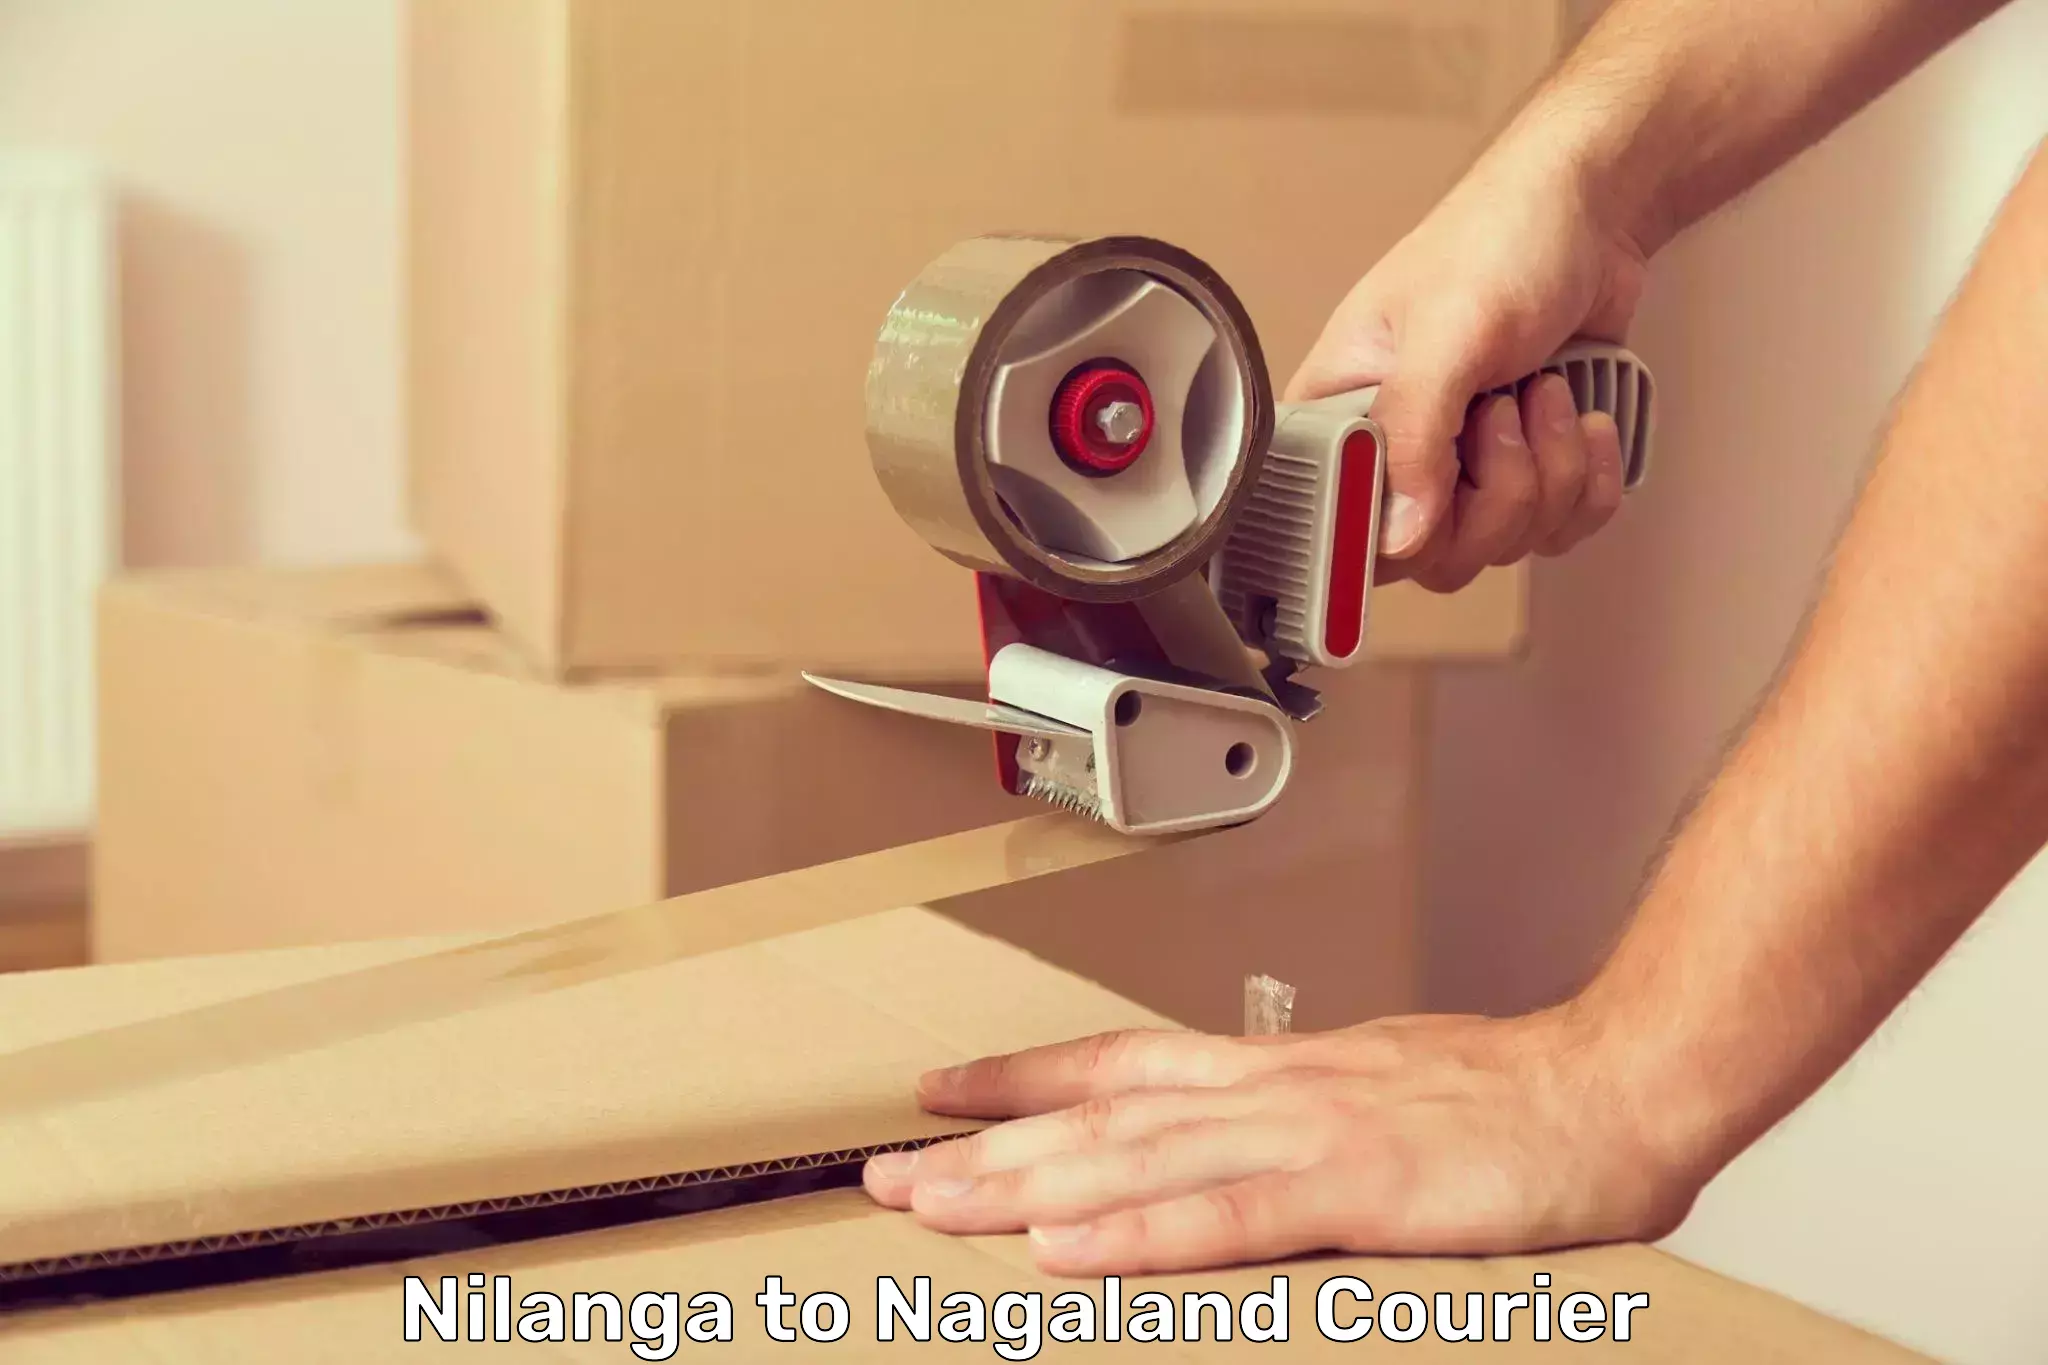 Premium courier services Nilanga to Nagaland